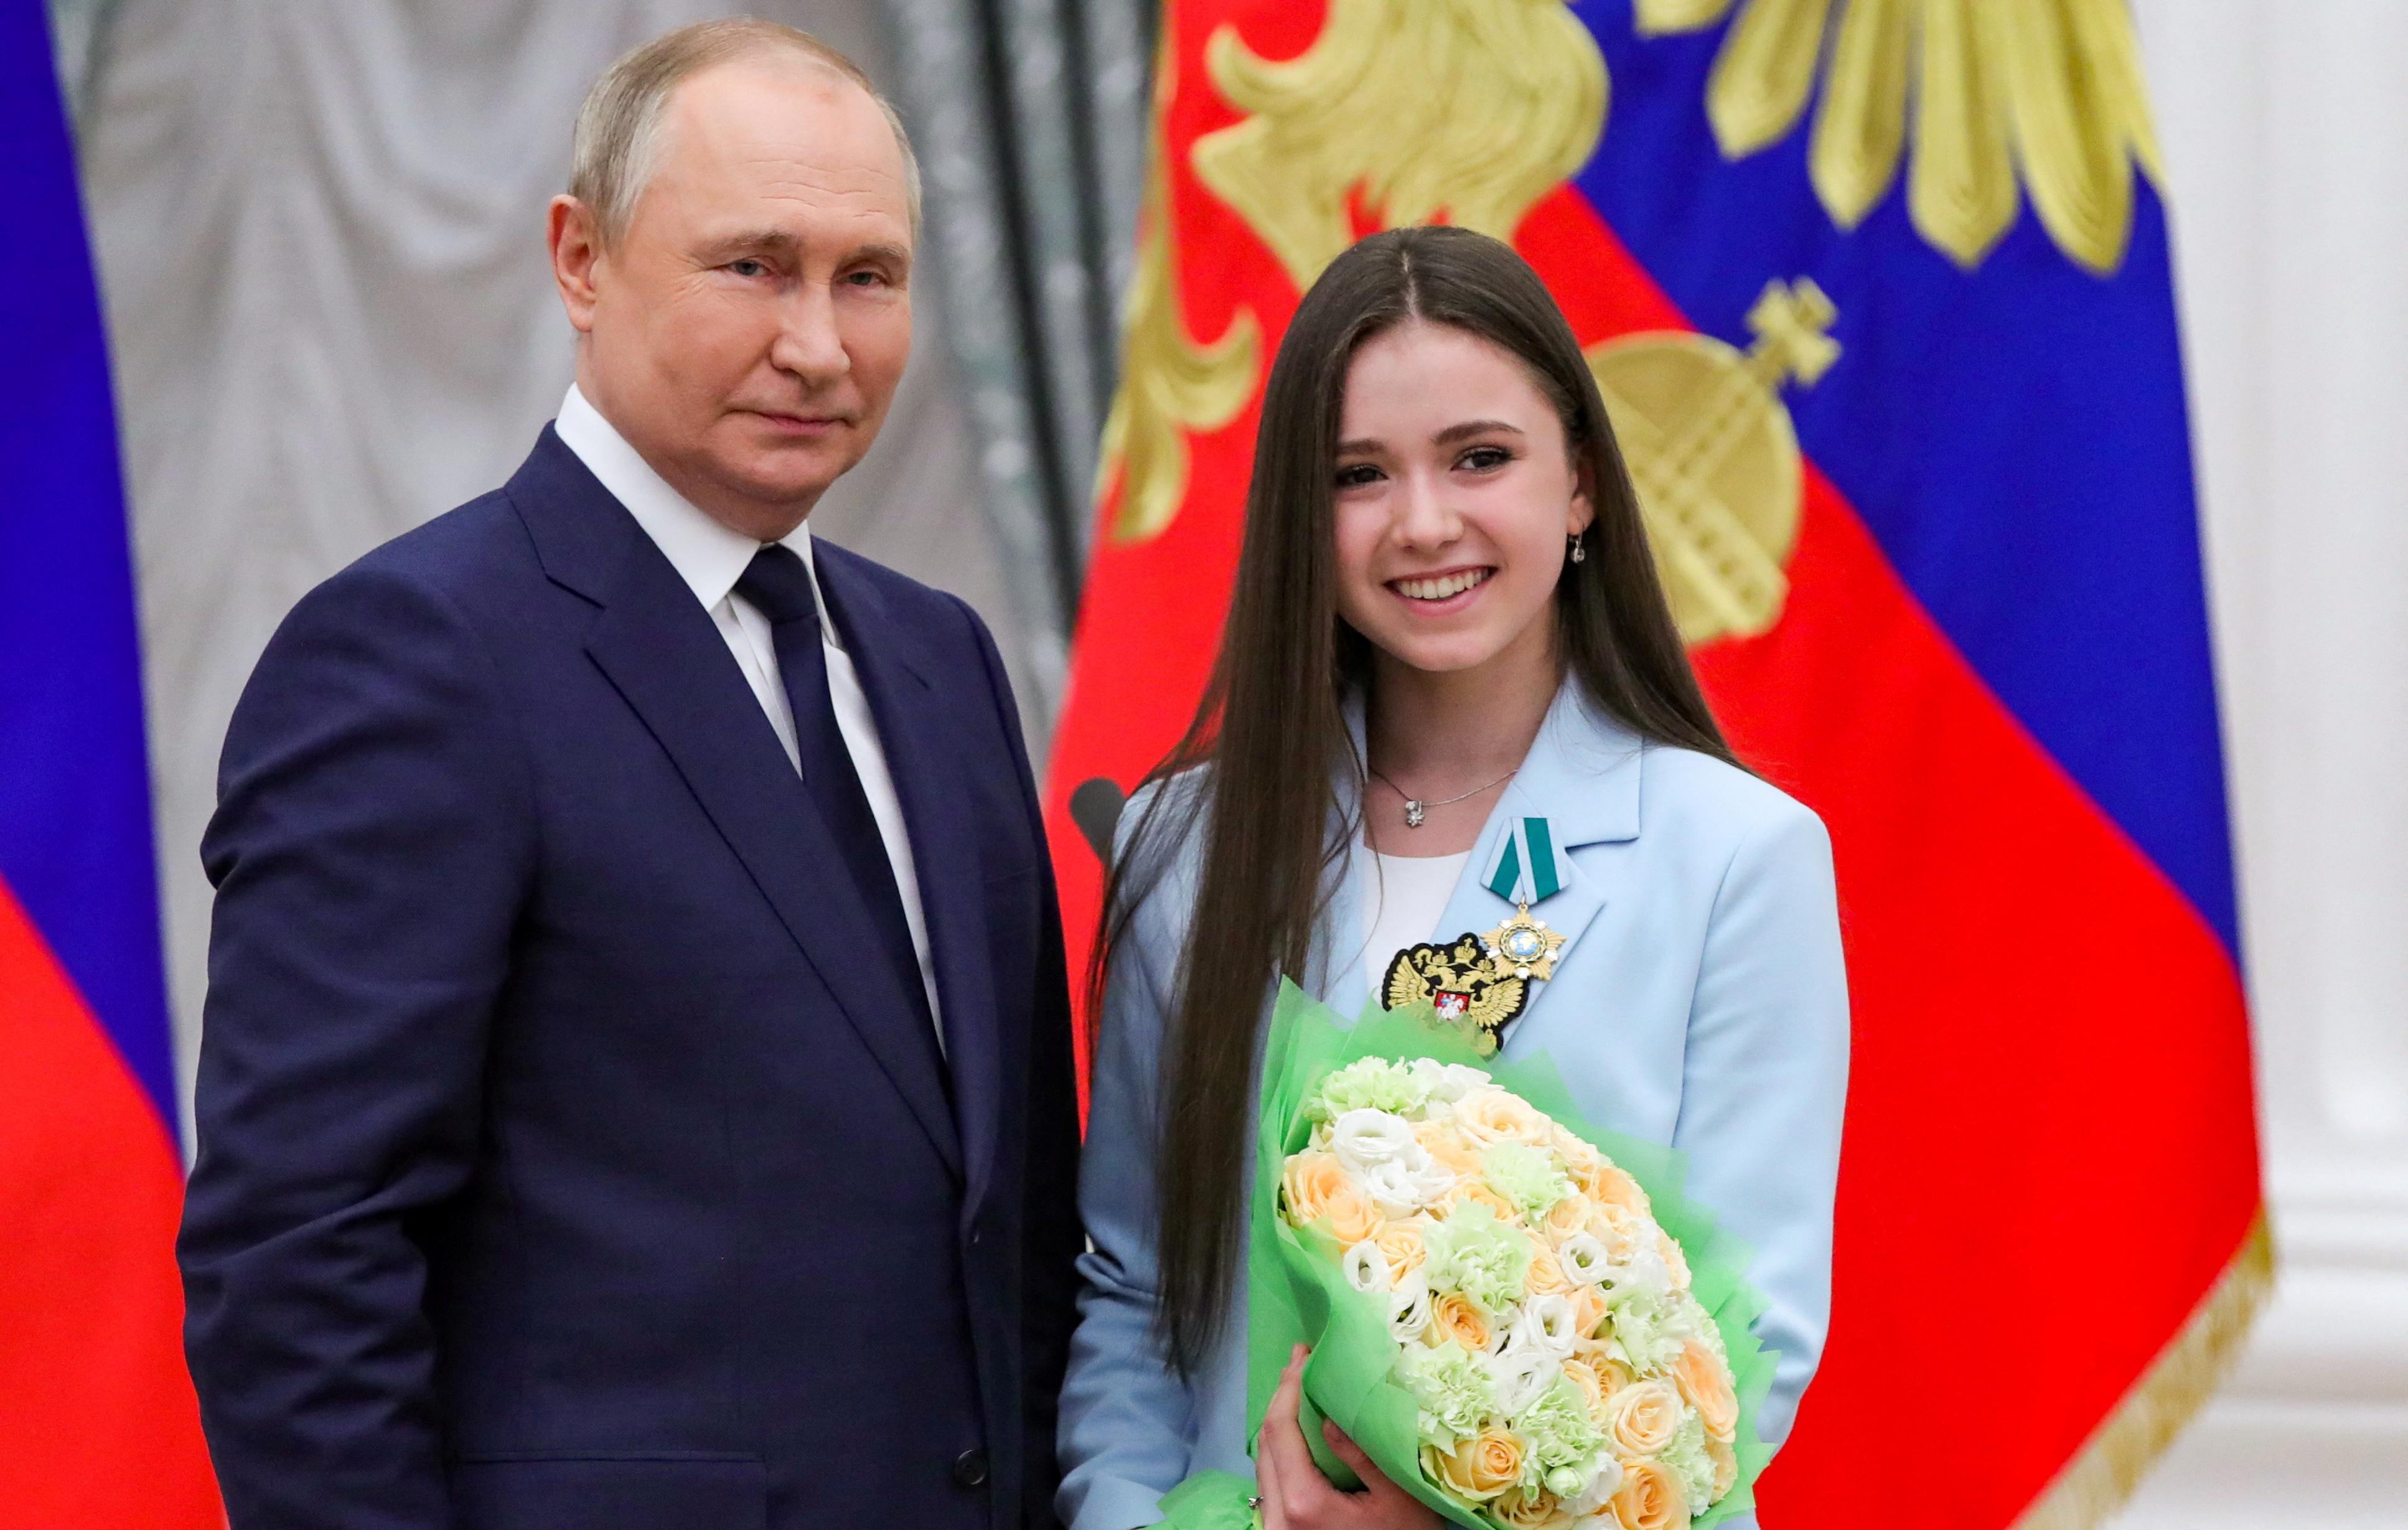 Putin verteidigt Wunderkind Walijewa: Doping im Eiskunstlauf 